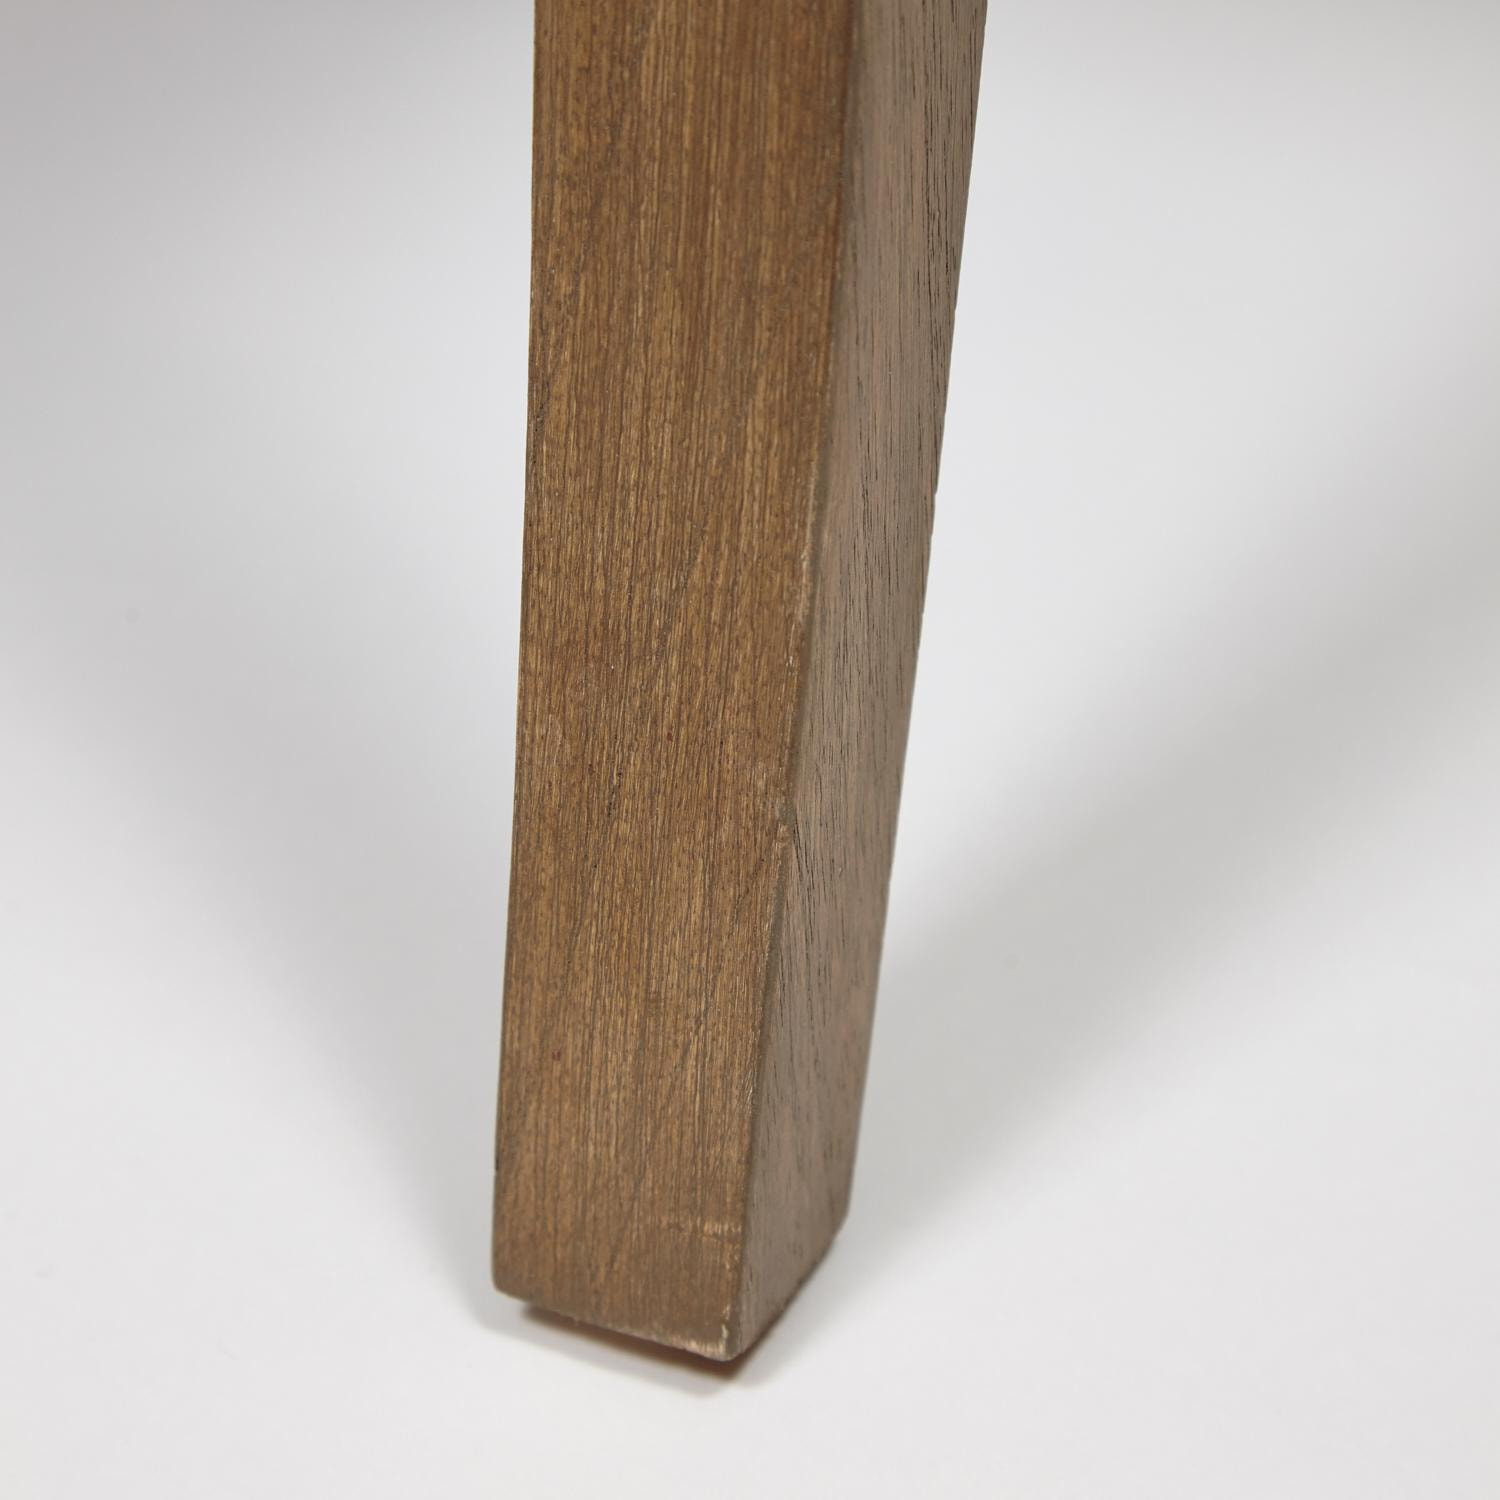 Кресло Secret de Maison DIADEMA ( mod. 20-01) красное дерево/ткань хлопок, 68*71*88 см, Античный дуб/ткань бежевая, ткань FP 028